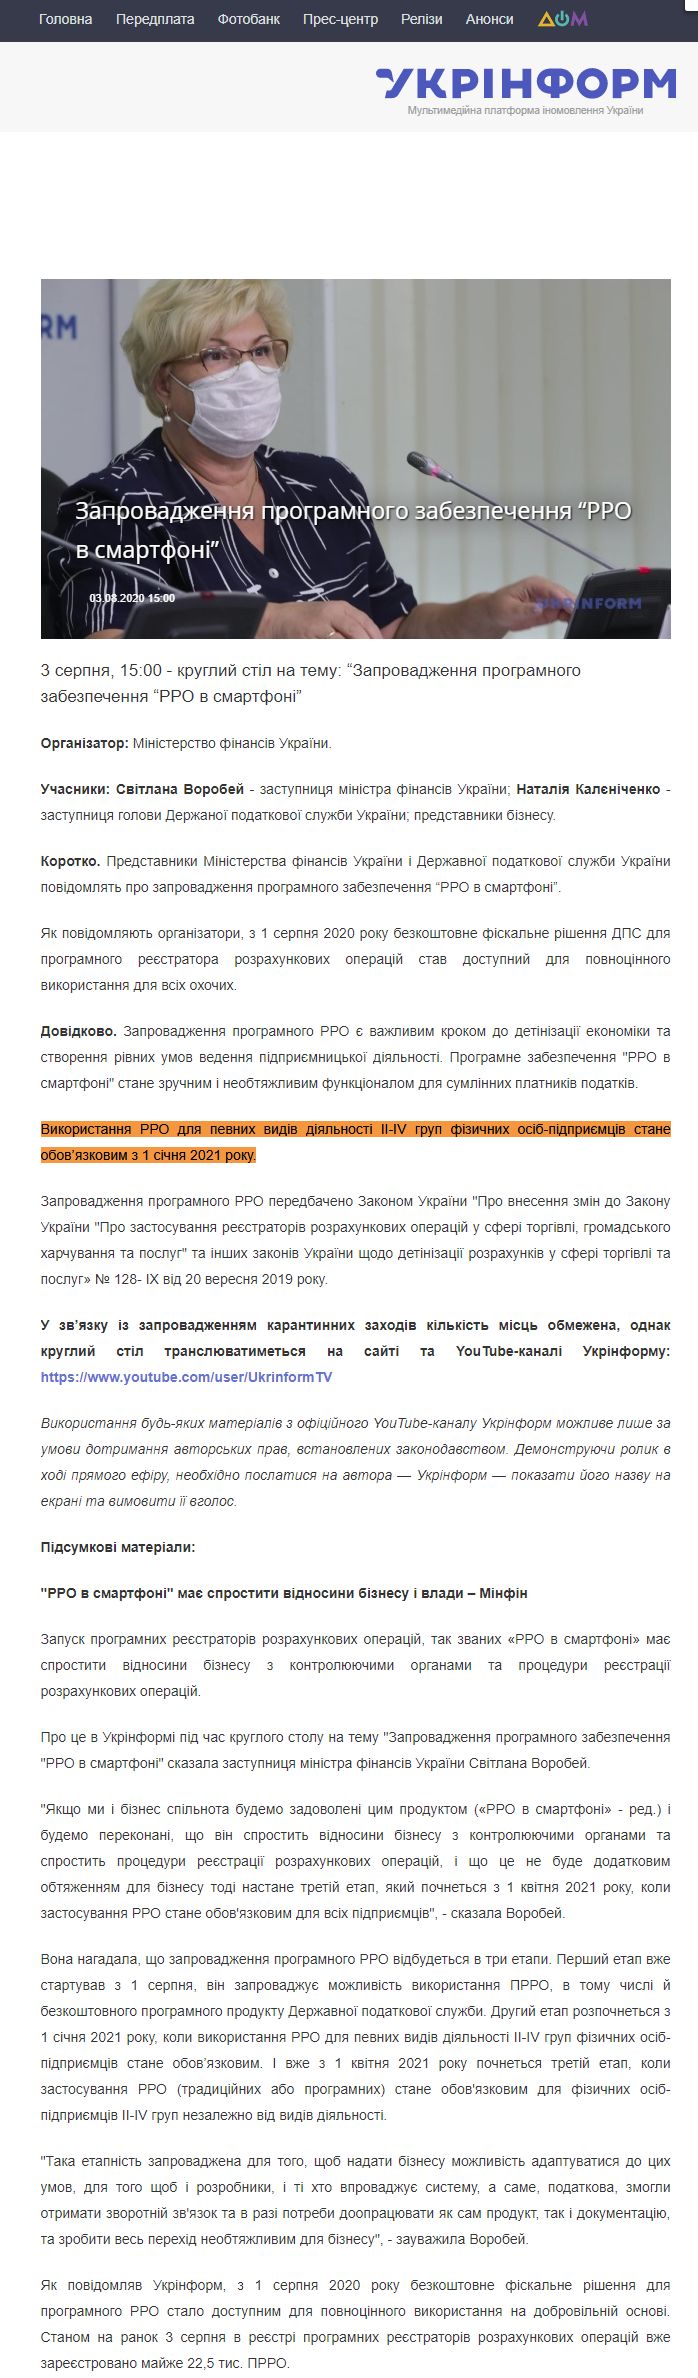 https://www.ukrinform.ua/rubric-presshall/3072650-zaprovadzenna-programnogo-zabezpecenna-rro-v-smartfoni.html